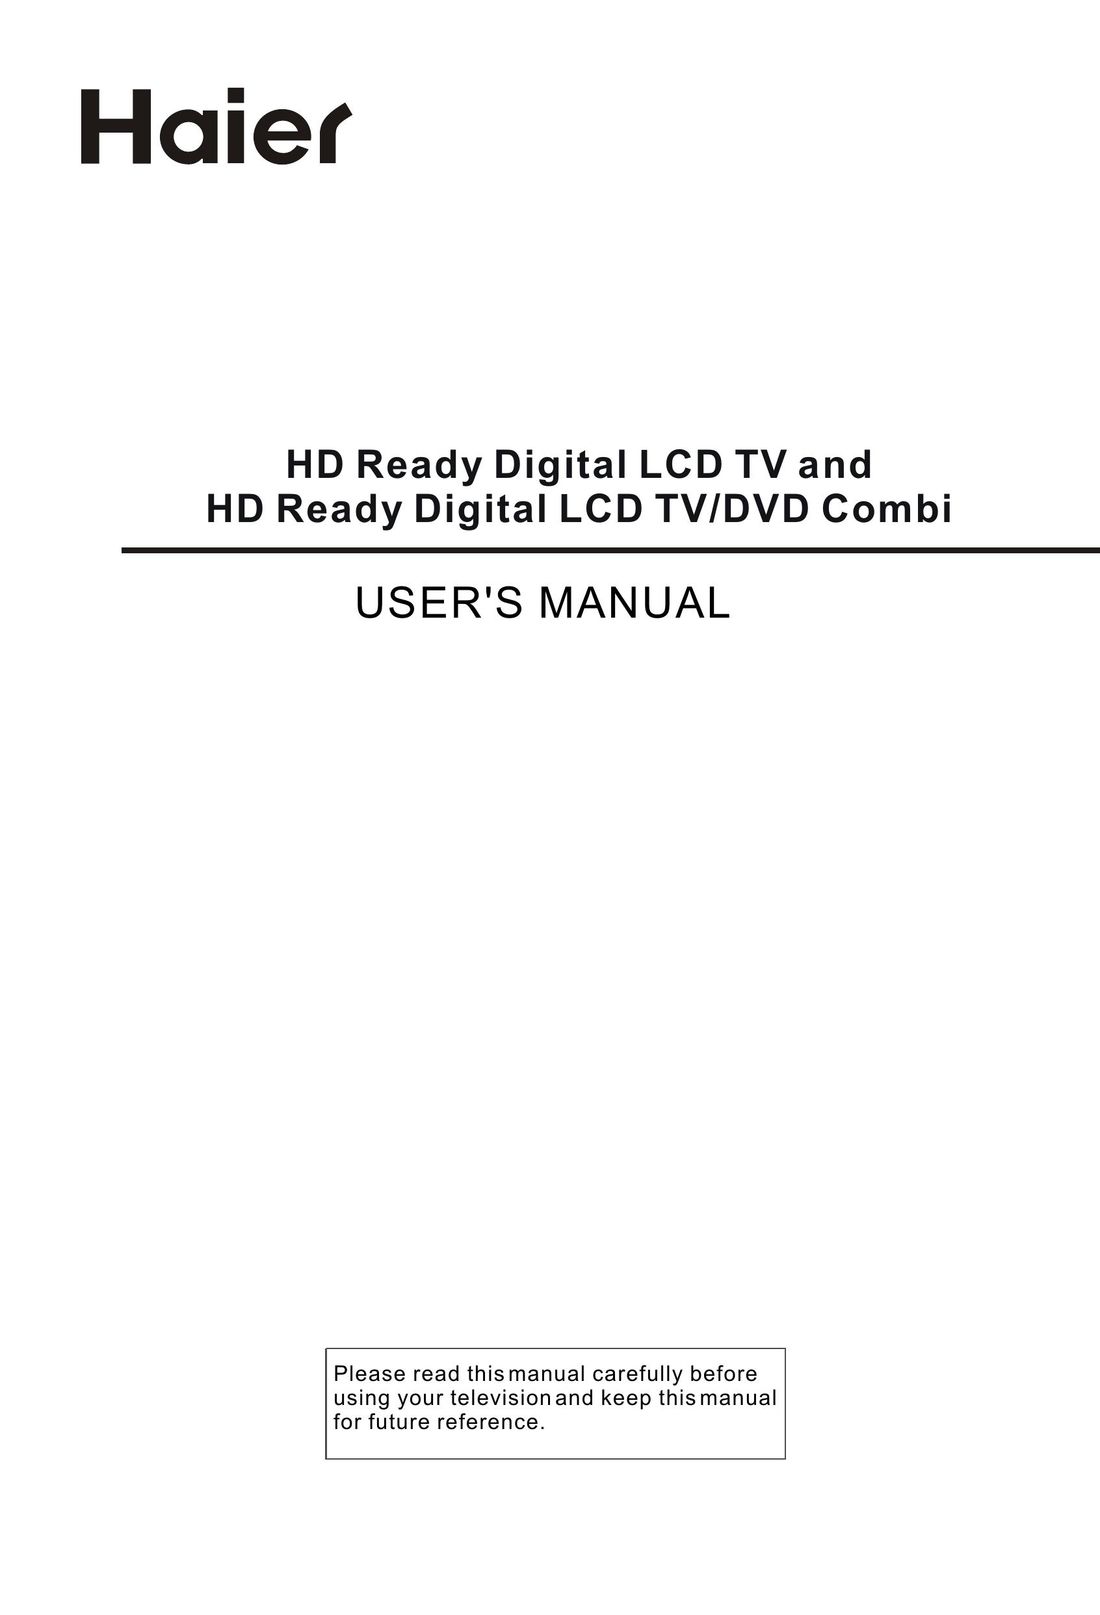 Haier 0090502138 TV DVD Combo User Manual